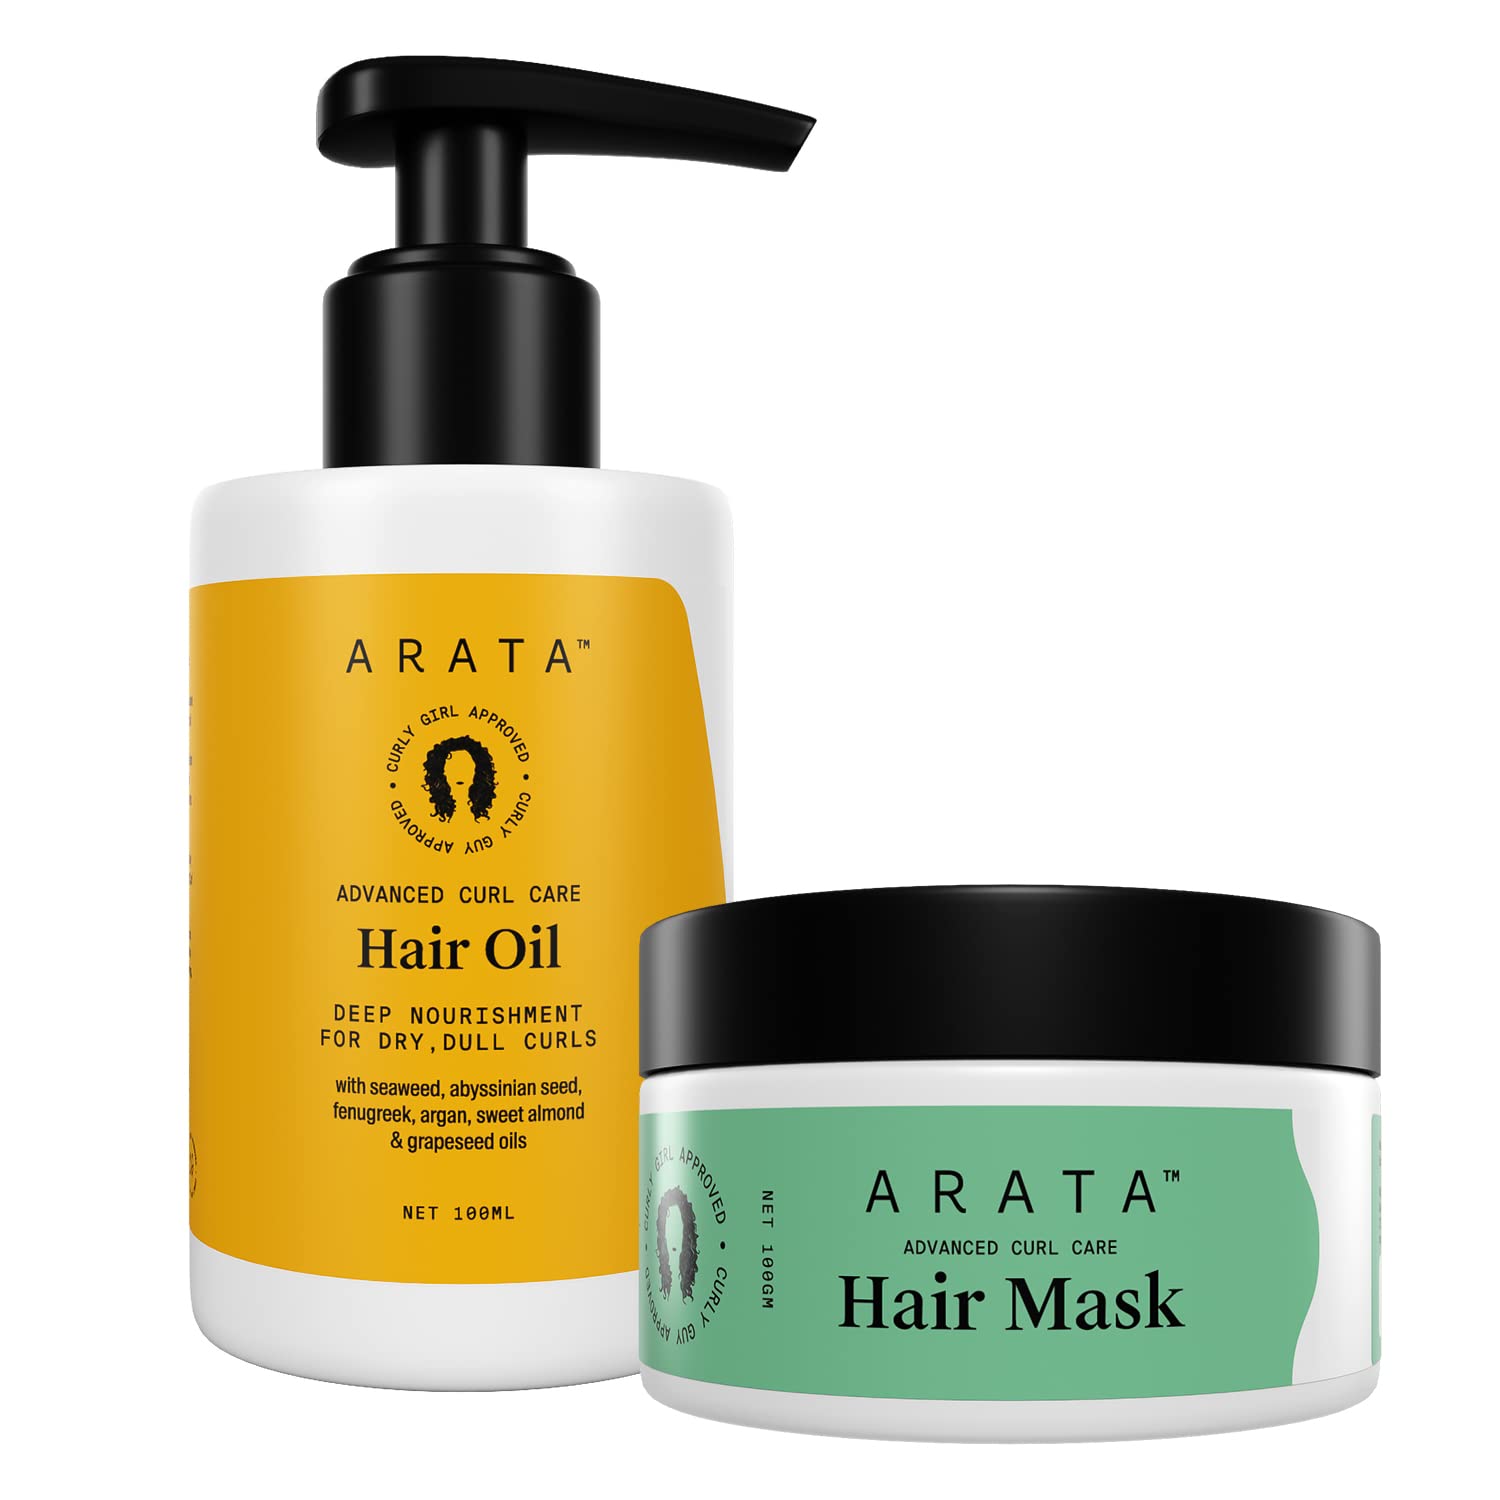 Arata Advanced Curl Care Hair Oil 100ml & Arata Advanced Curl Care Hair Mask 100g